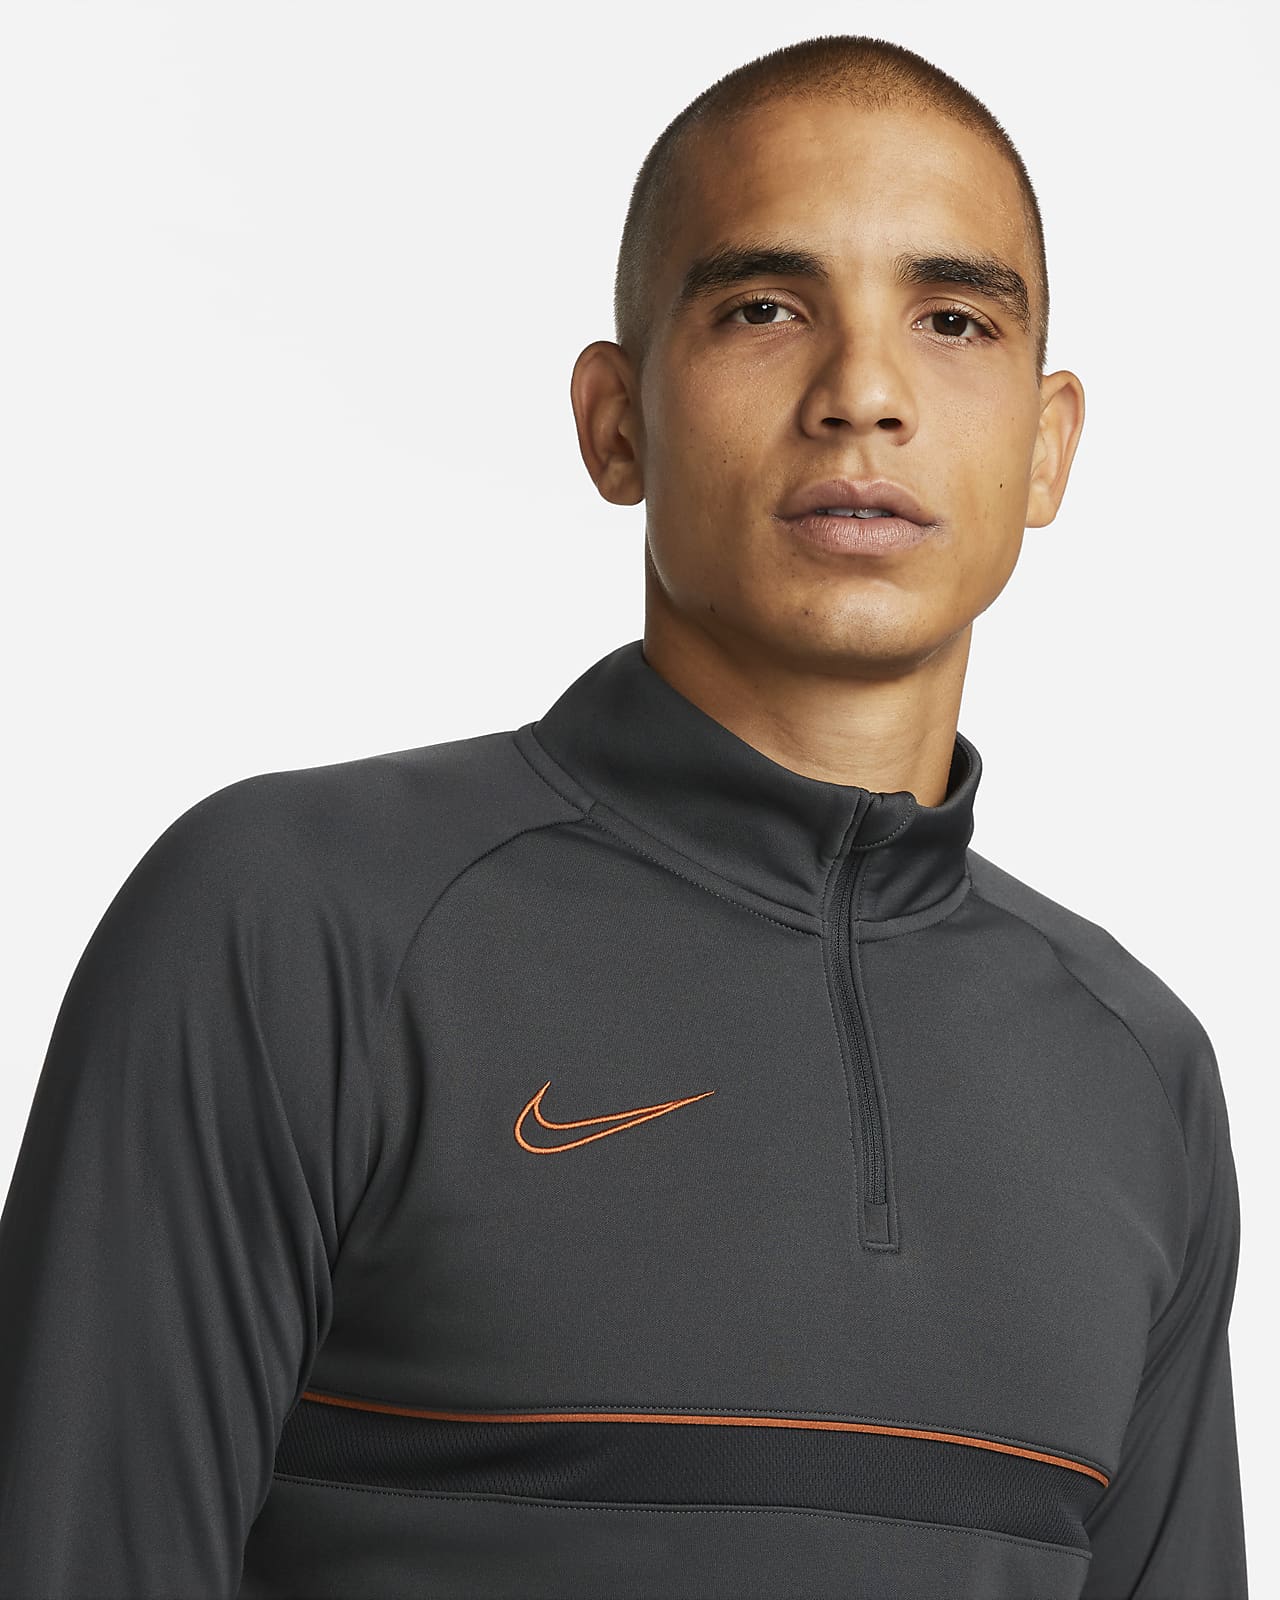 Nike Dri-FIT Academy Camiseta de fútbol de entrenamiento Hombre.